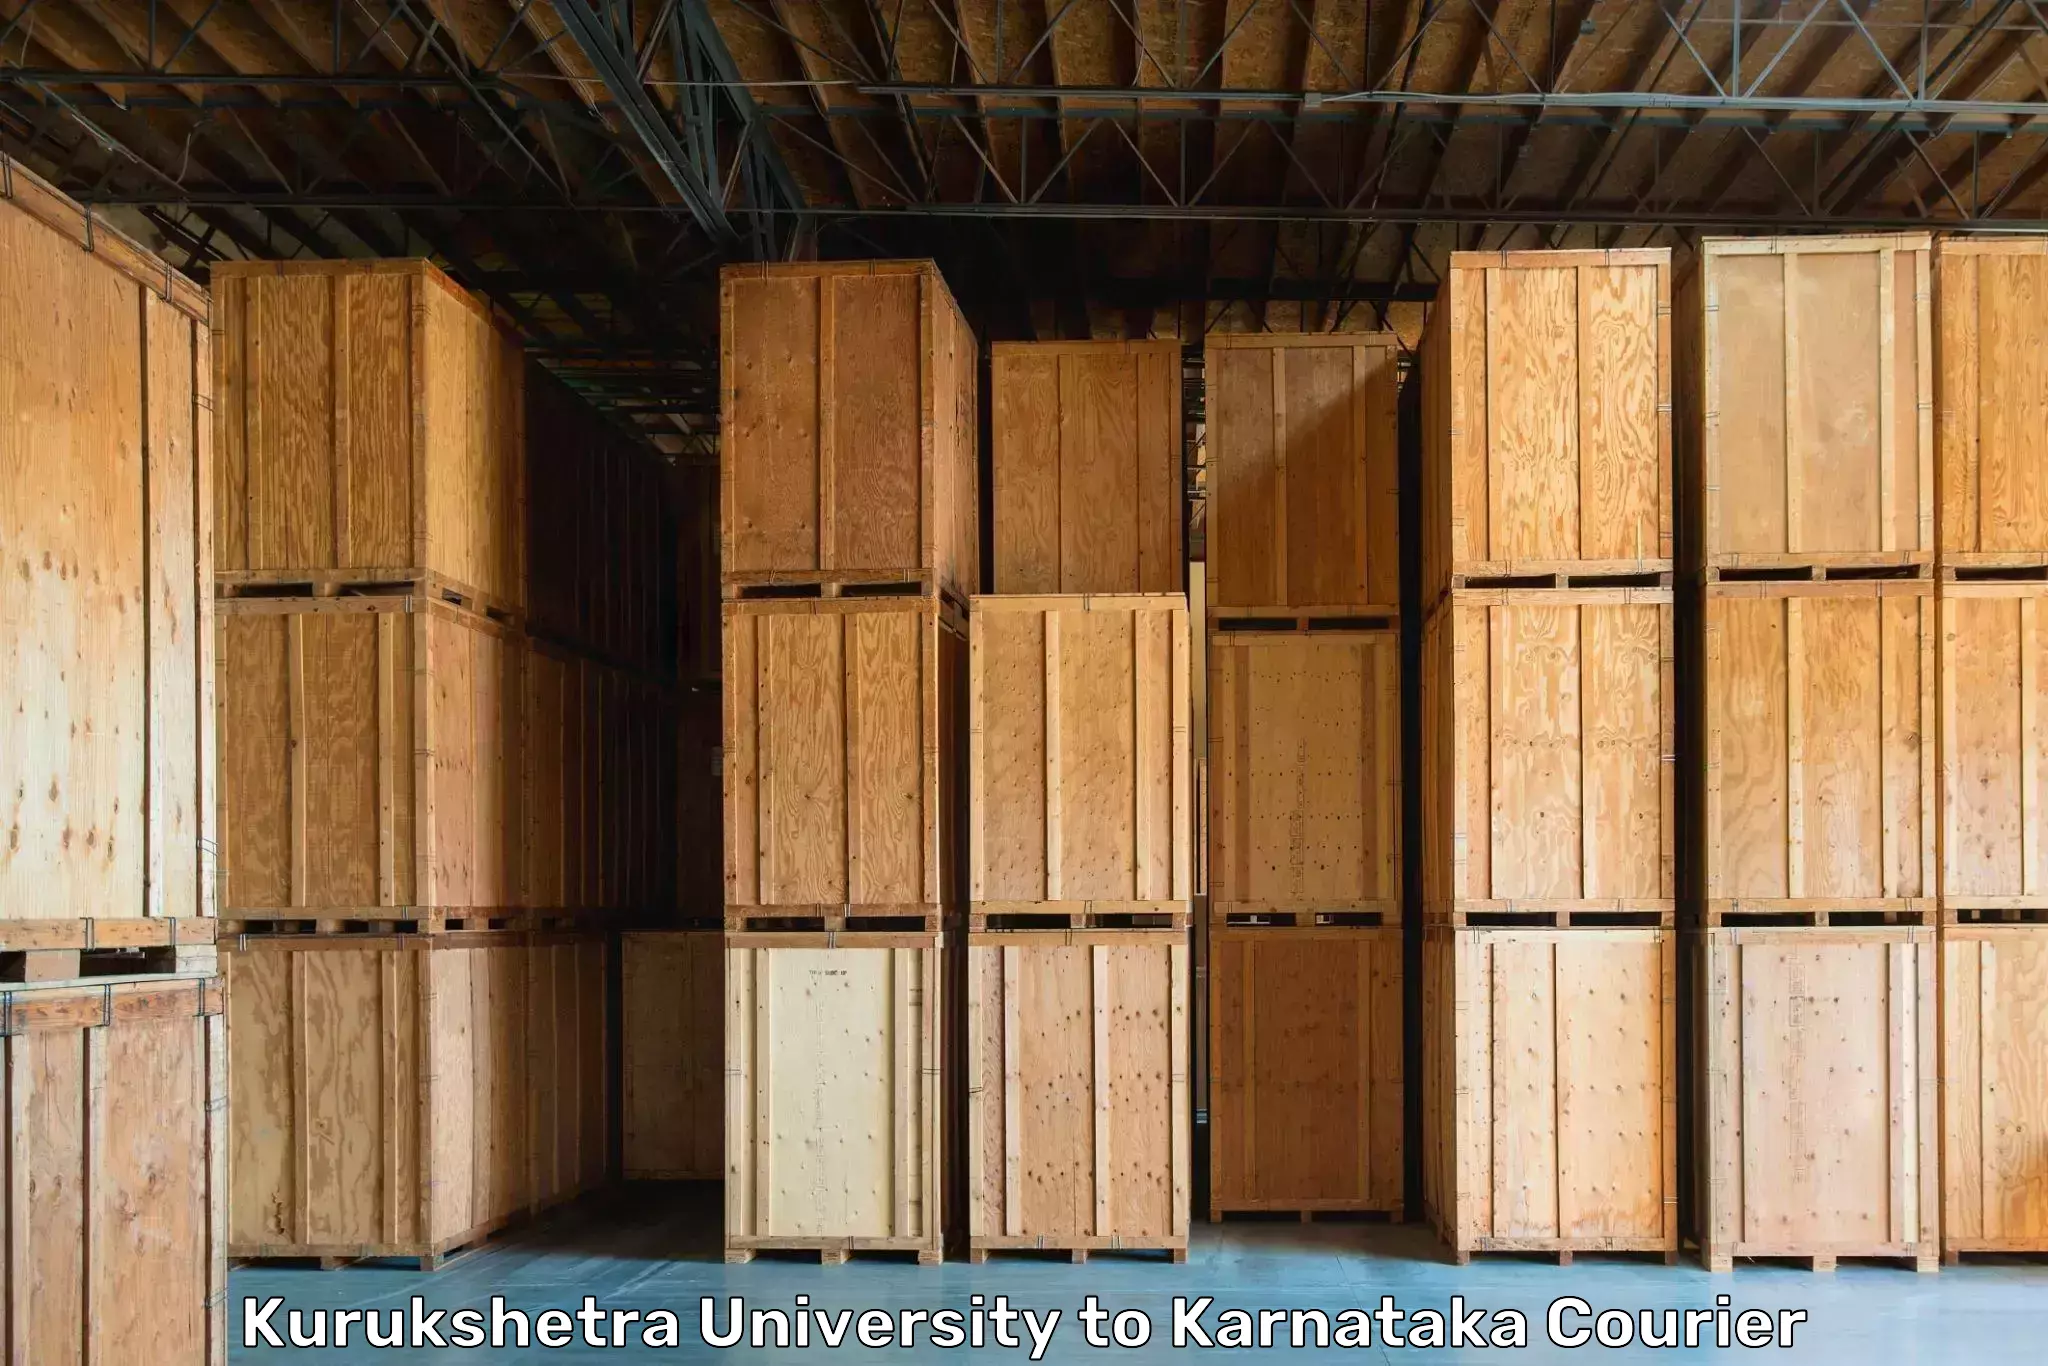 Efficient packing and moving Kurukshetra University to Hiriyur